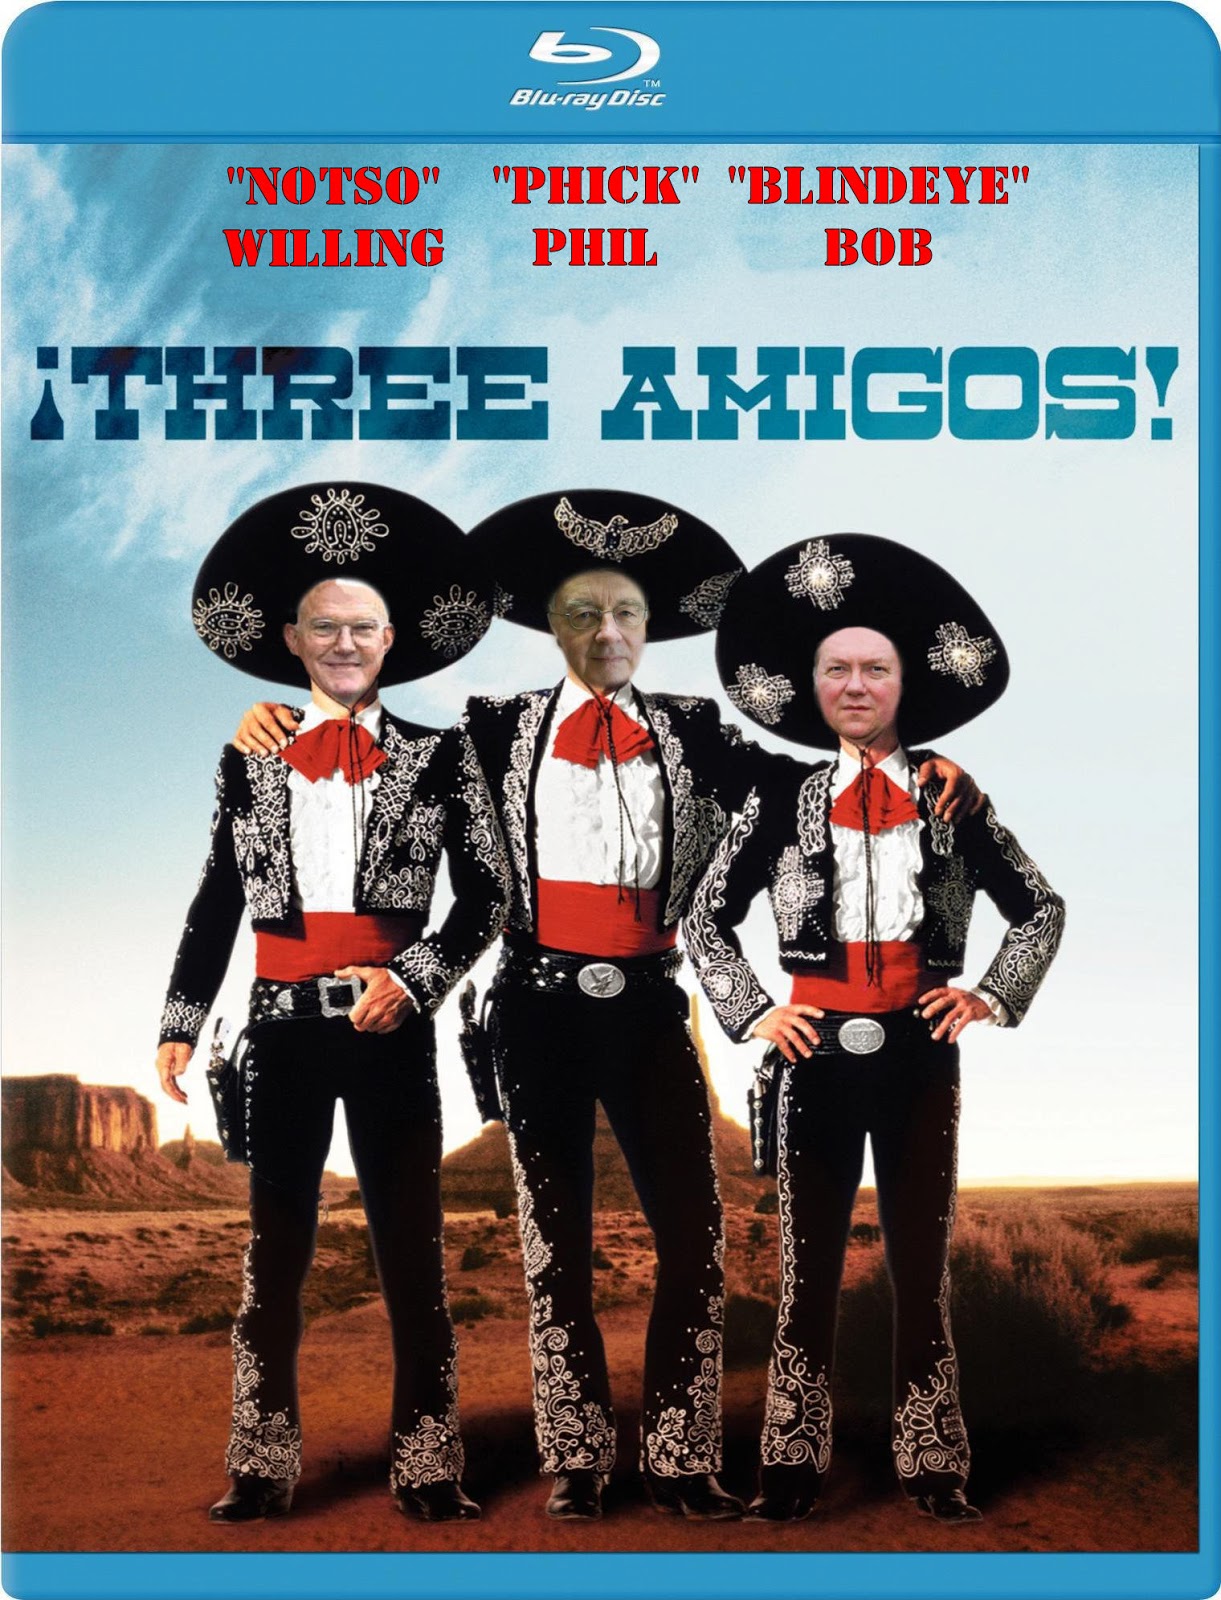 The Three Amigos Movie Quotes. QuotesGram